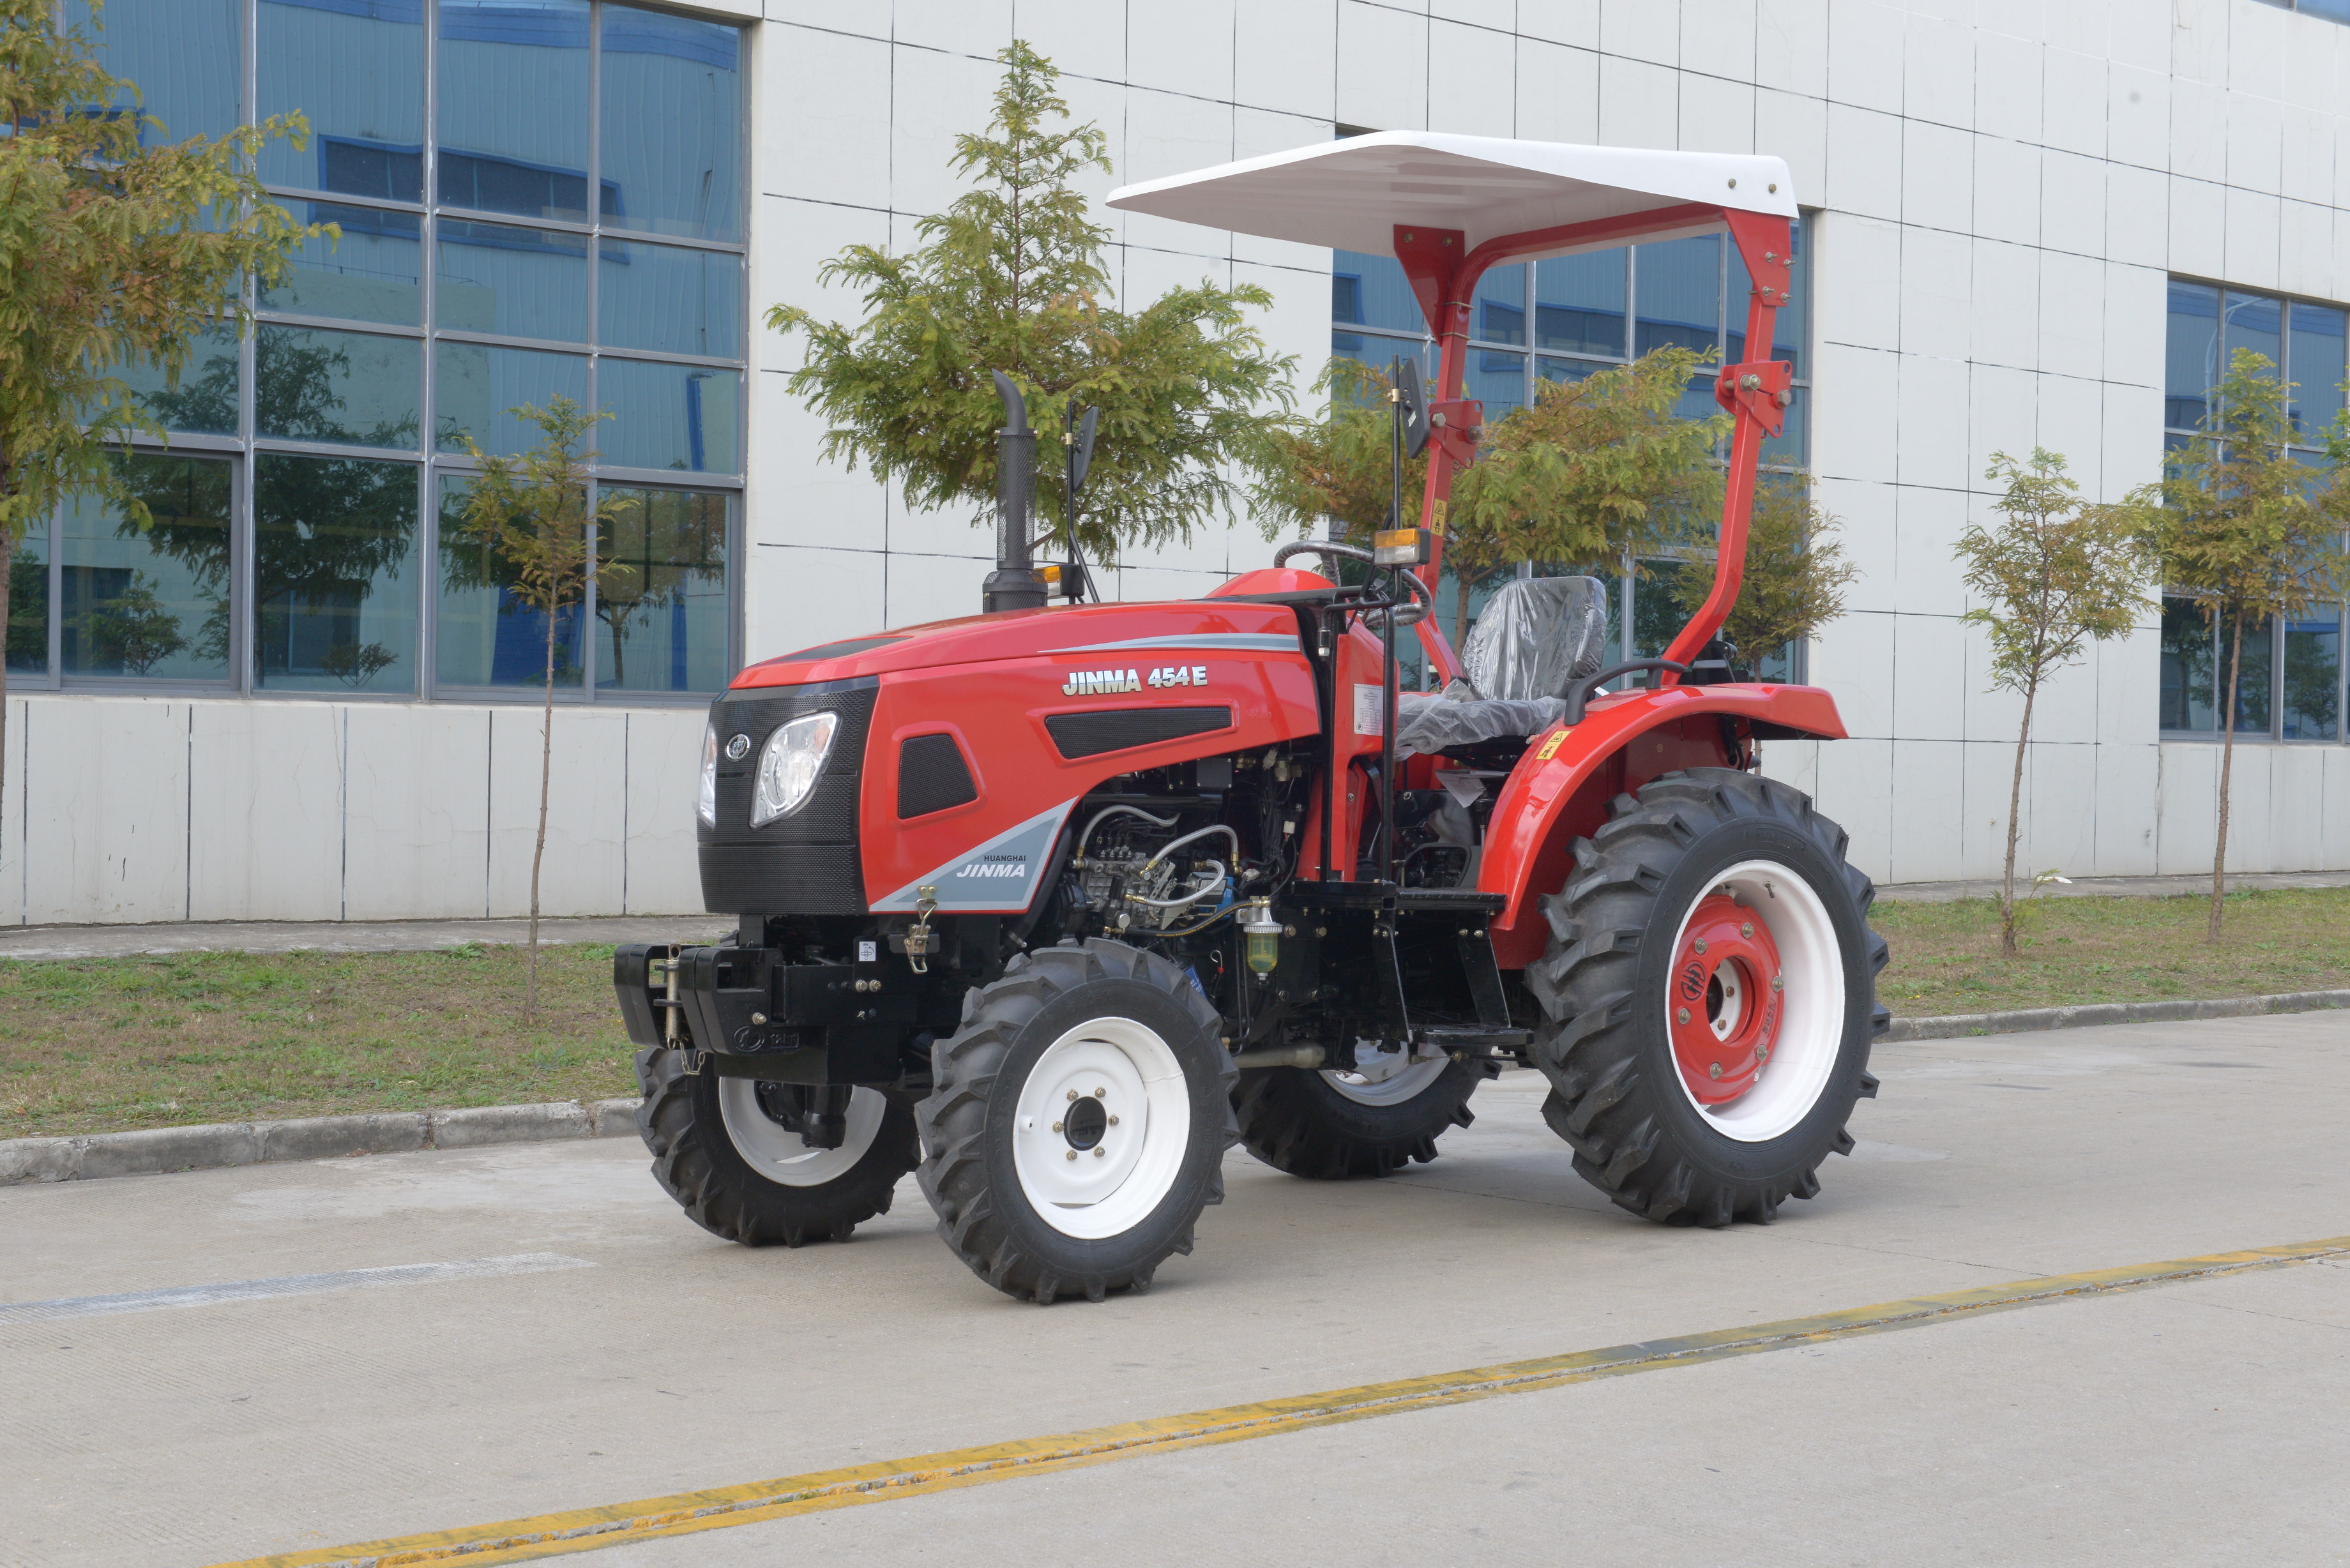 El Tractor tipo 454E combina nueva tecnología y nueva estructura